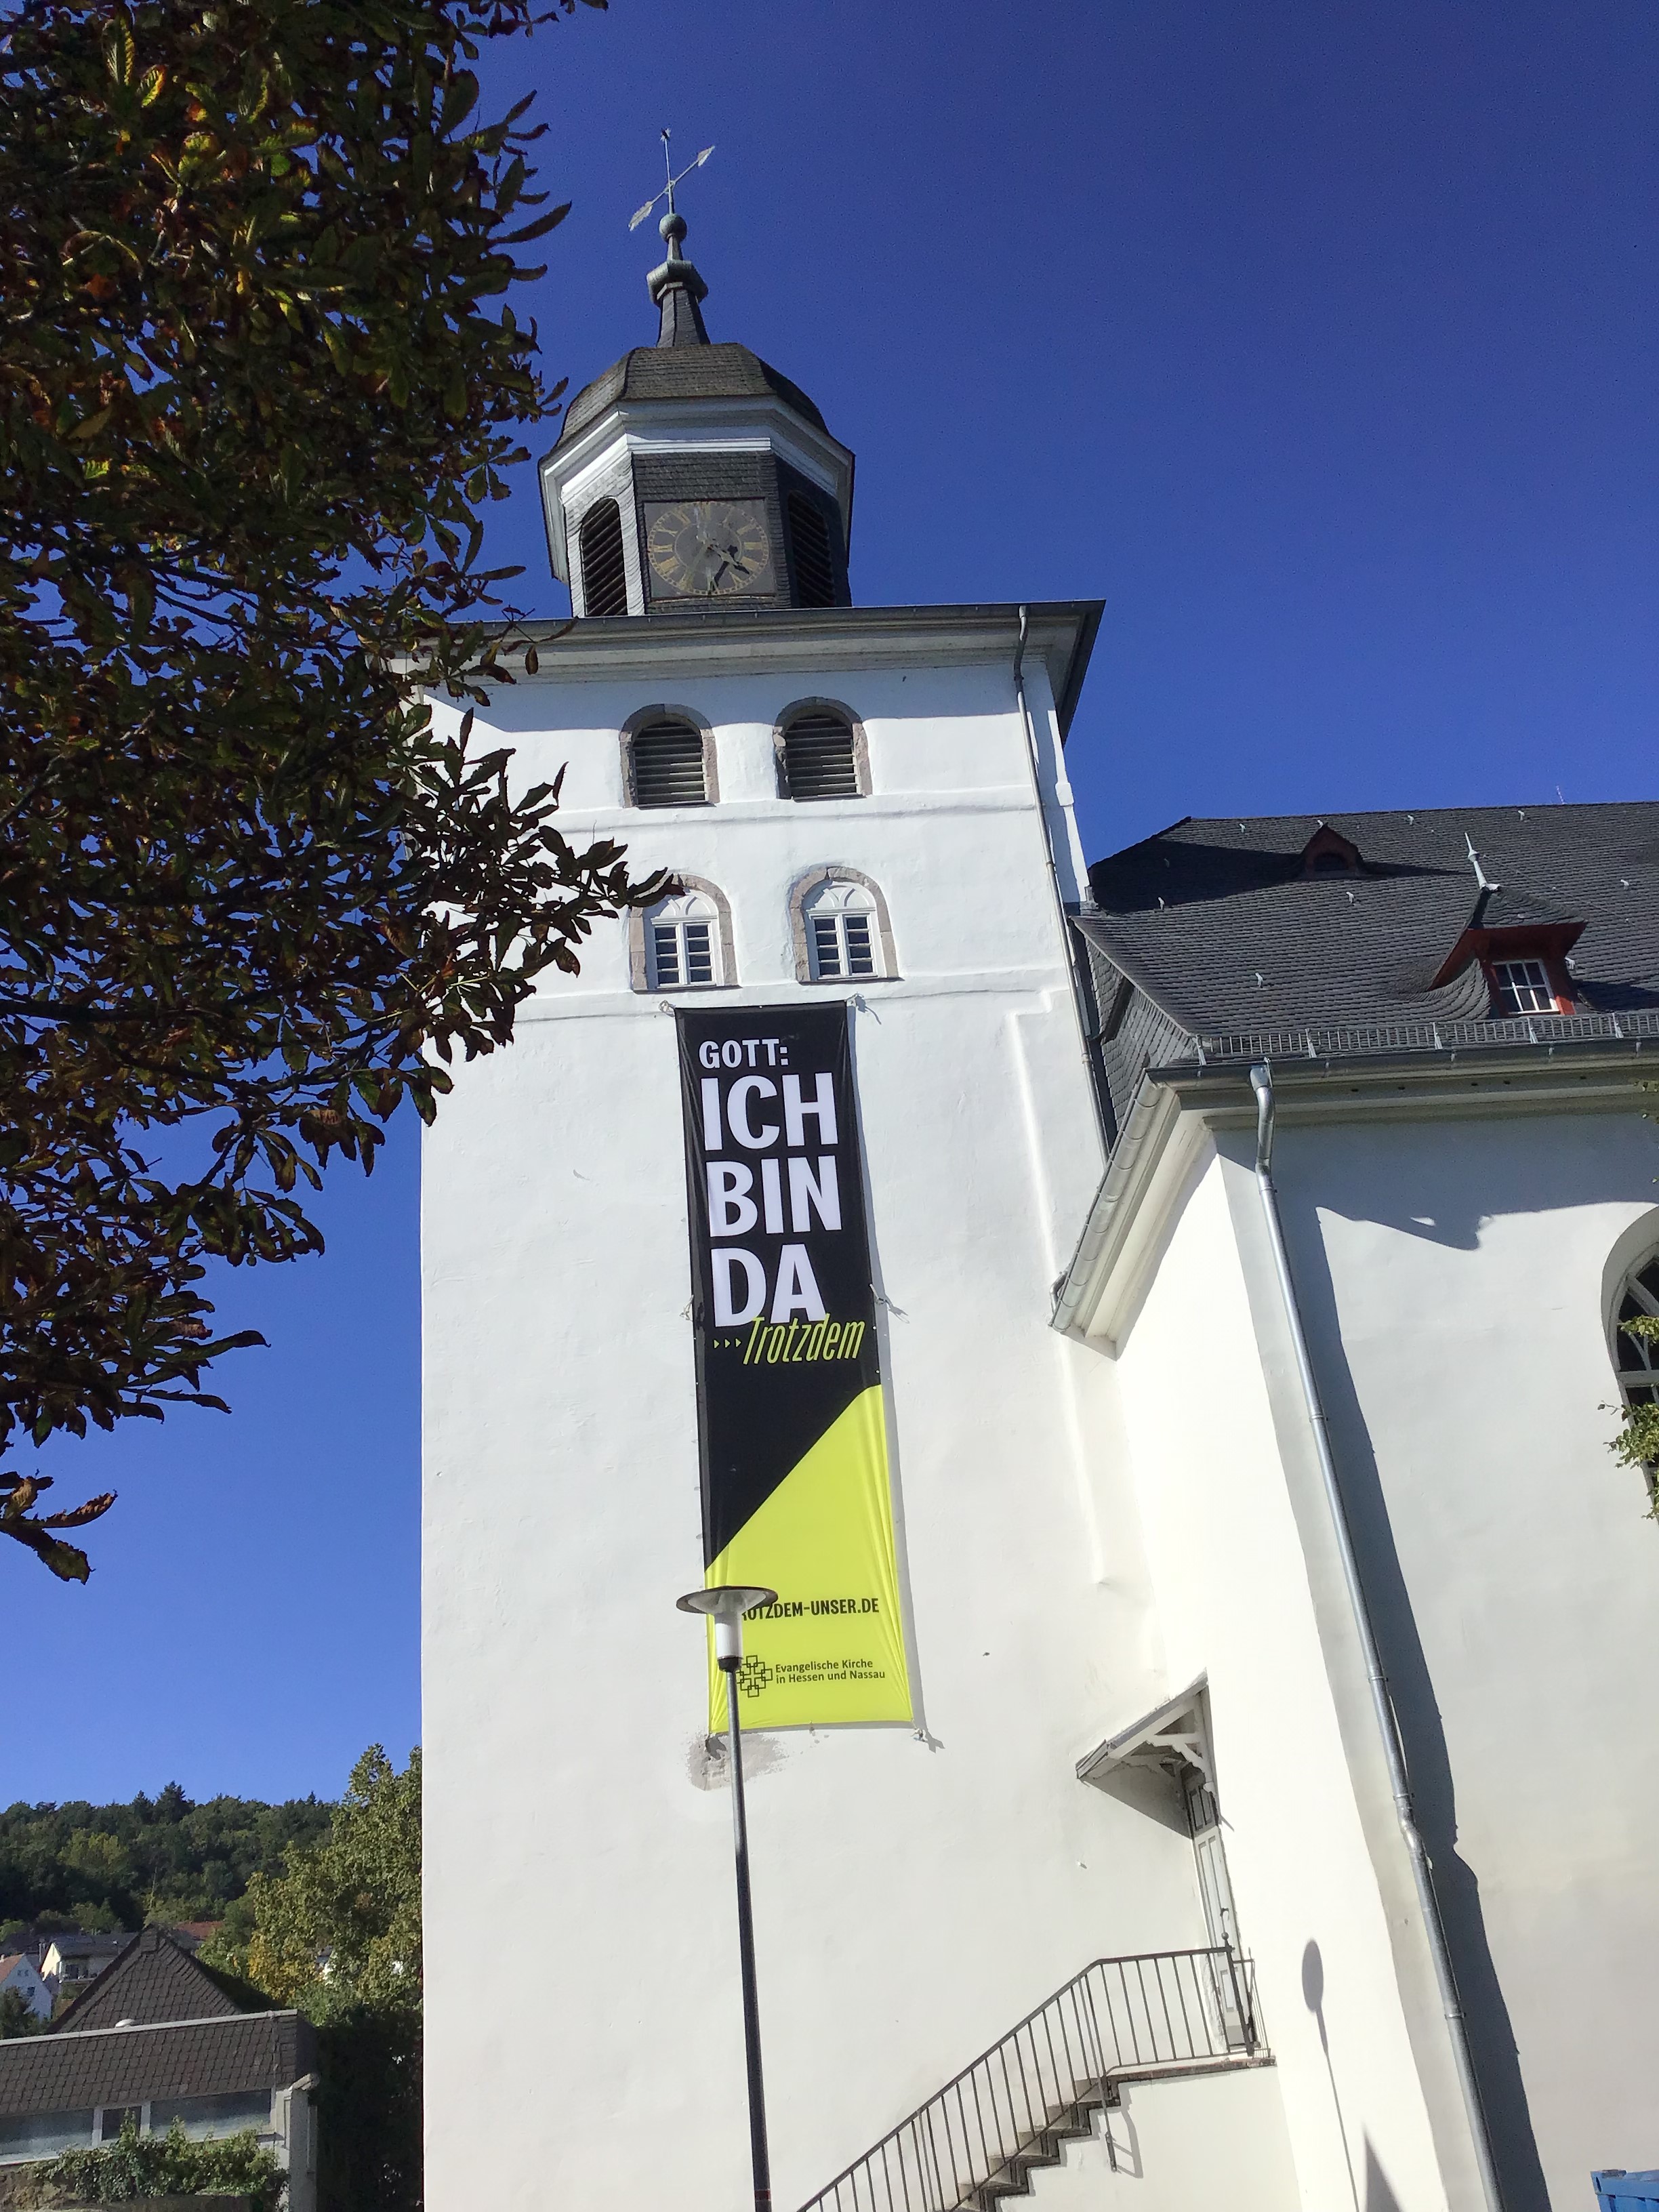 Die Stadtkirche der Evangelischen Kirchengemeinde Herborn mit Aktionsbanner der Impulspost zum Thema "Ich bin da - Trotzdem"